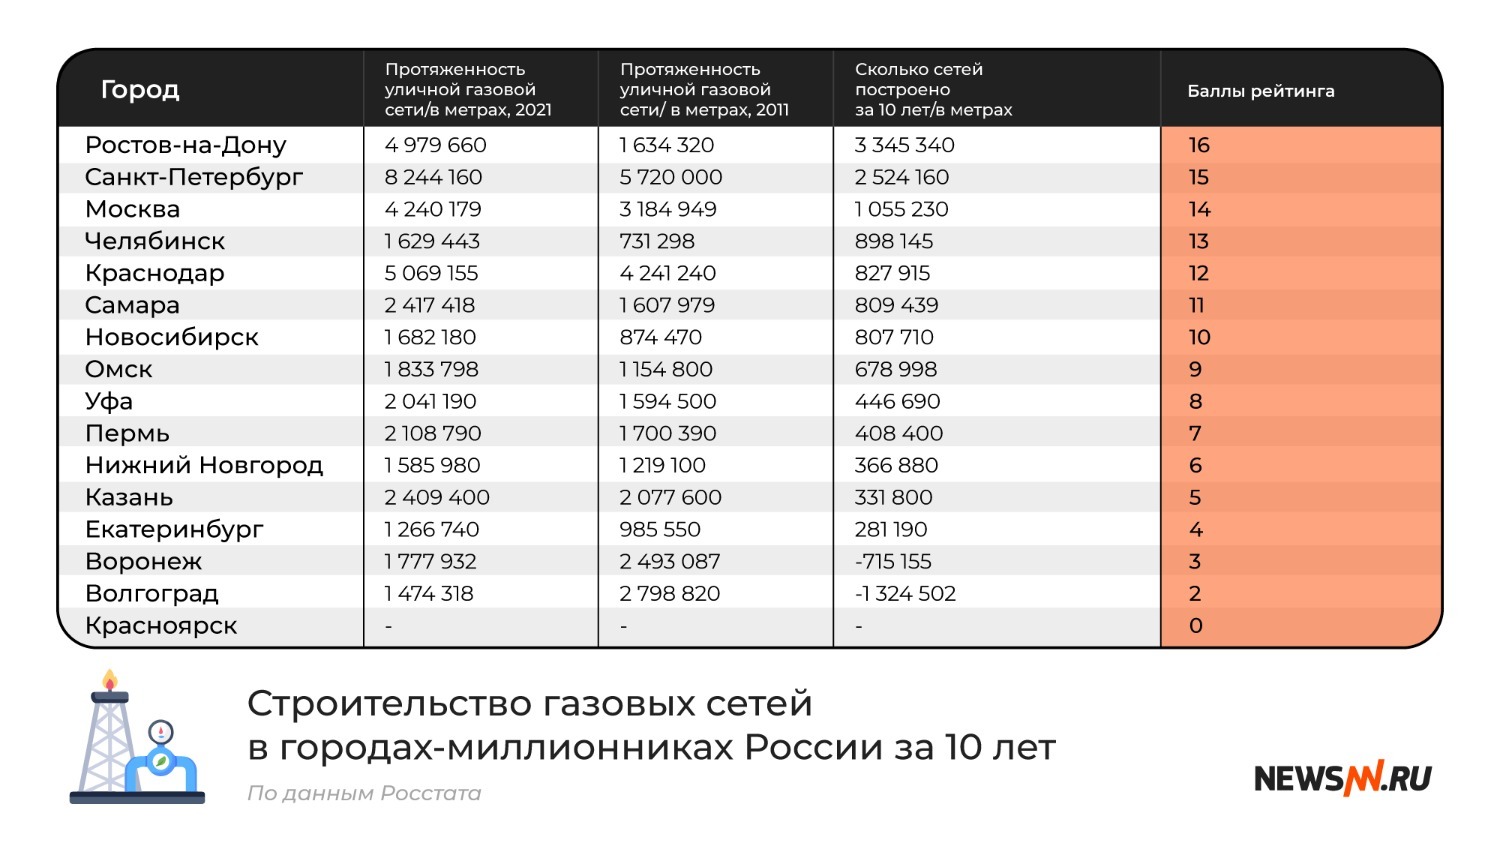 строительство газовых сетей в городах-миллионниках России за 10 лет